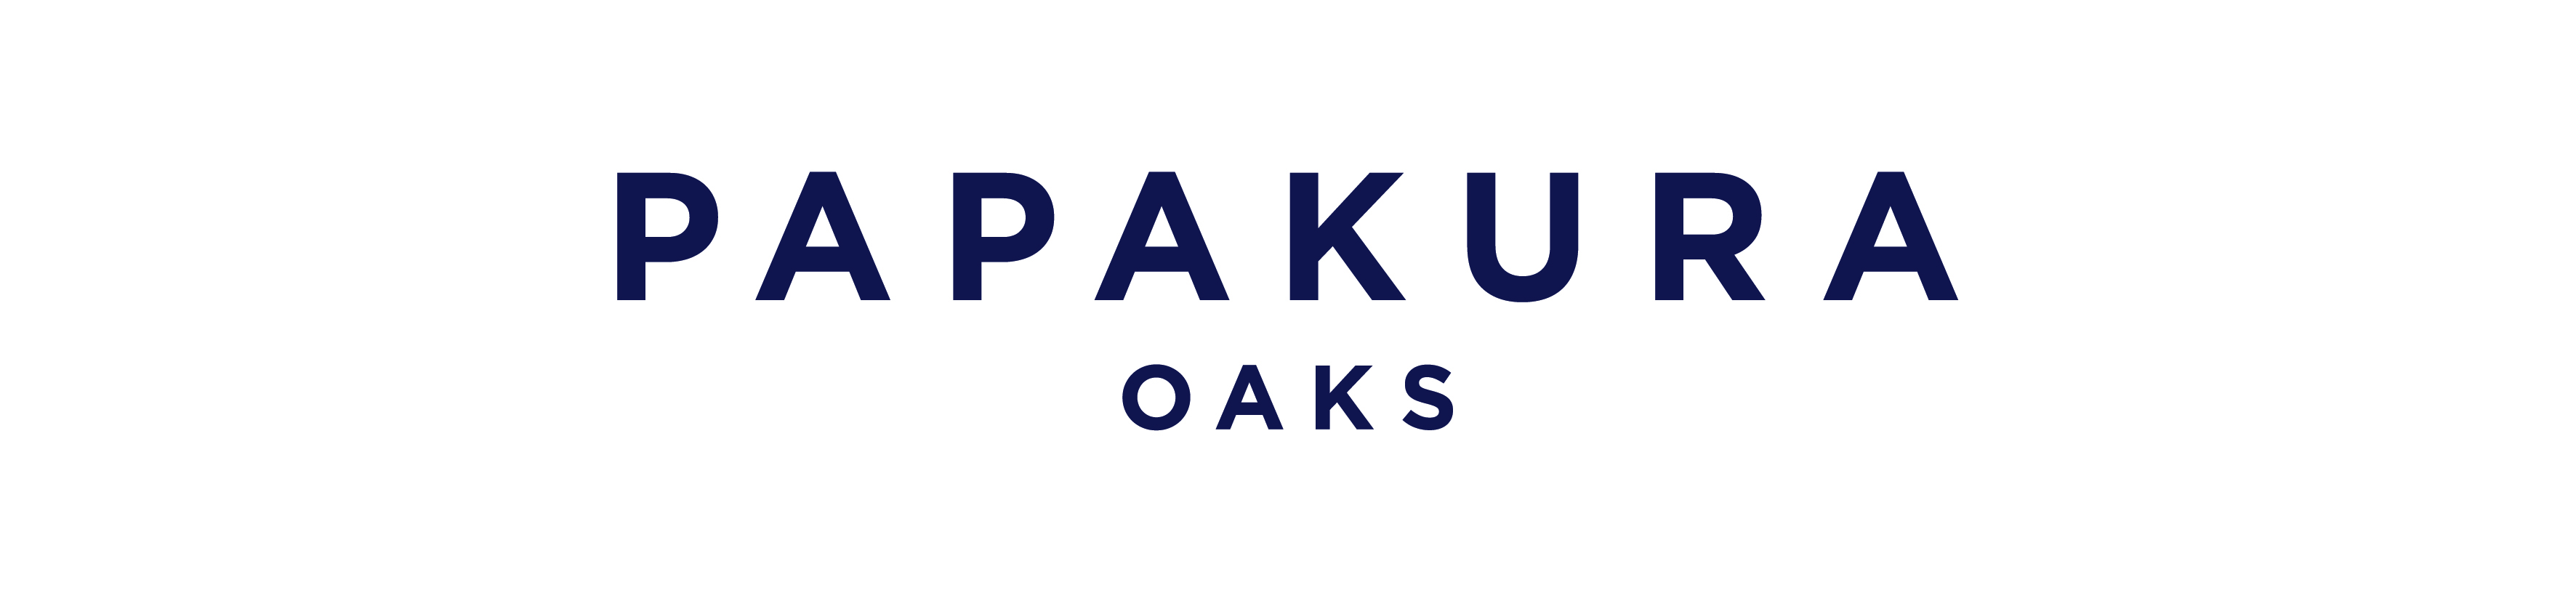 Papakura Oaks logo